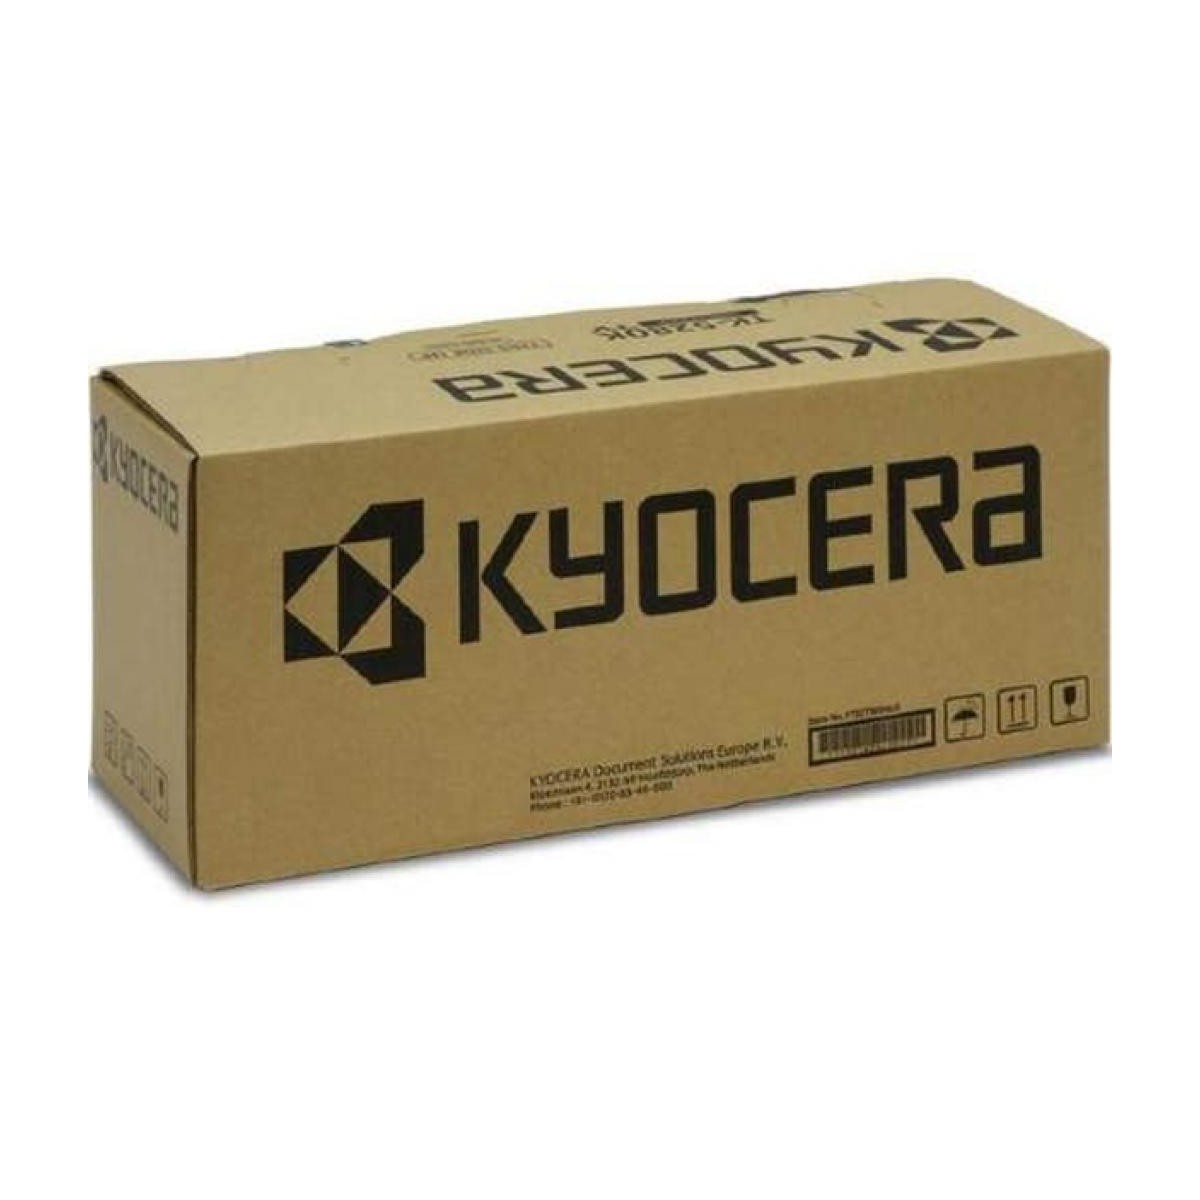 Kyocera Papierkassette PF-7140 2x500 Blatt A6-SRA3 52-300 g/m?